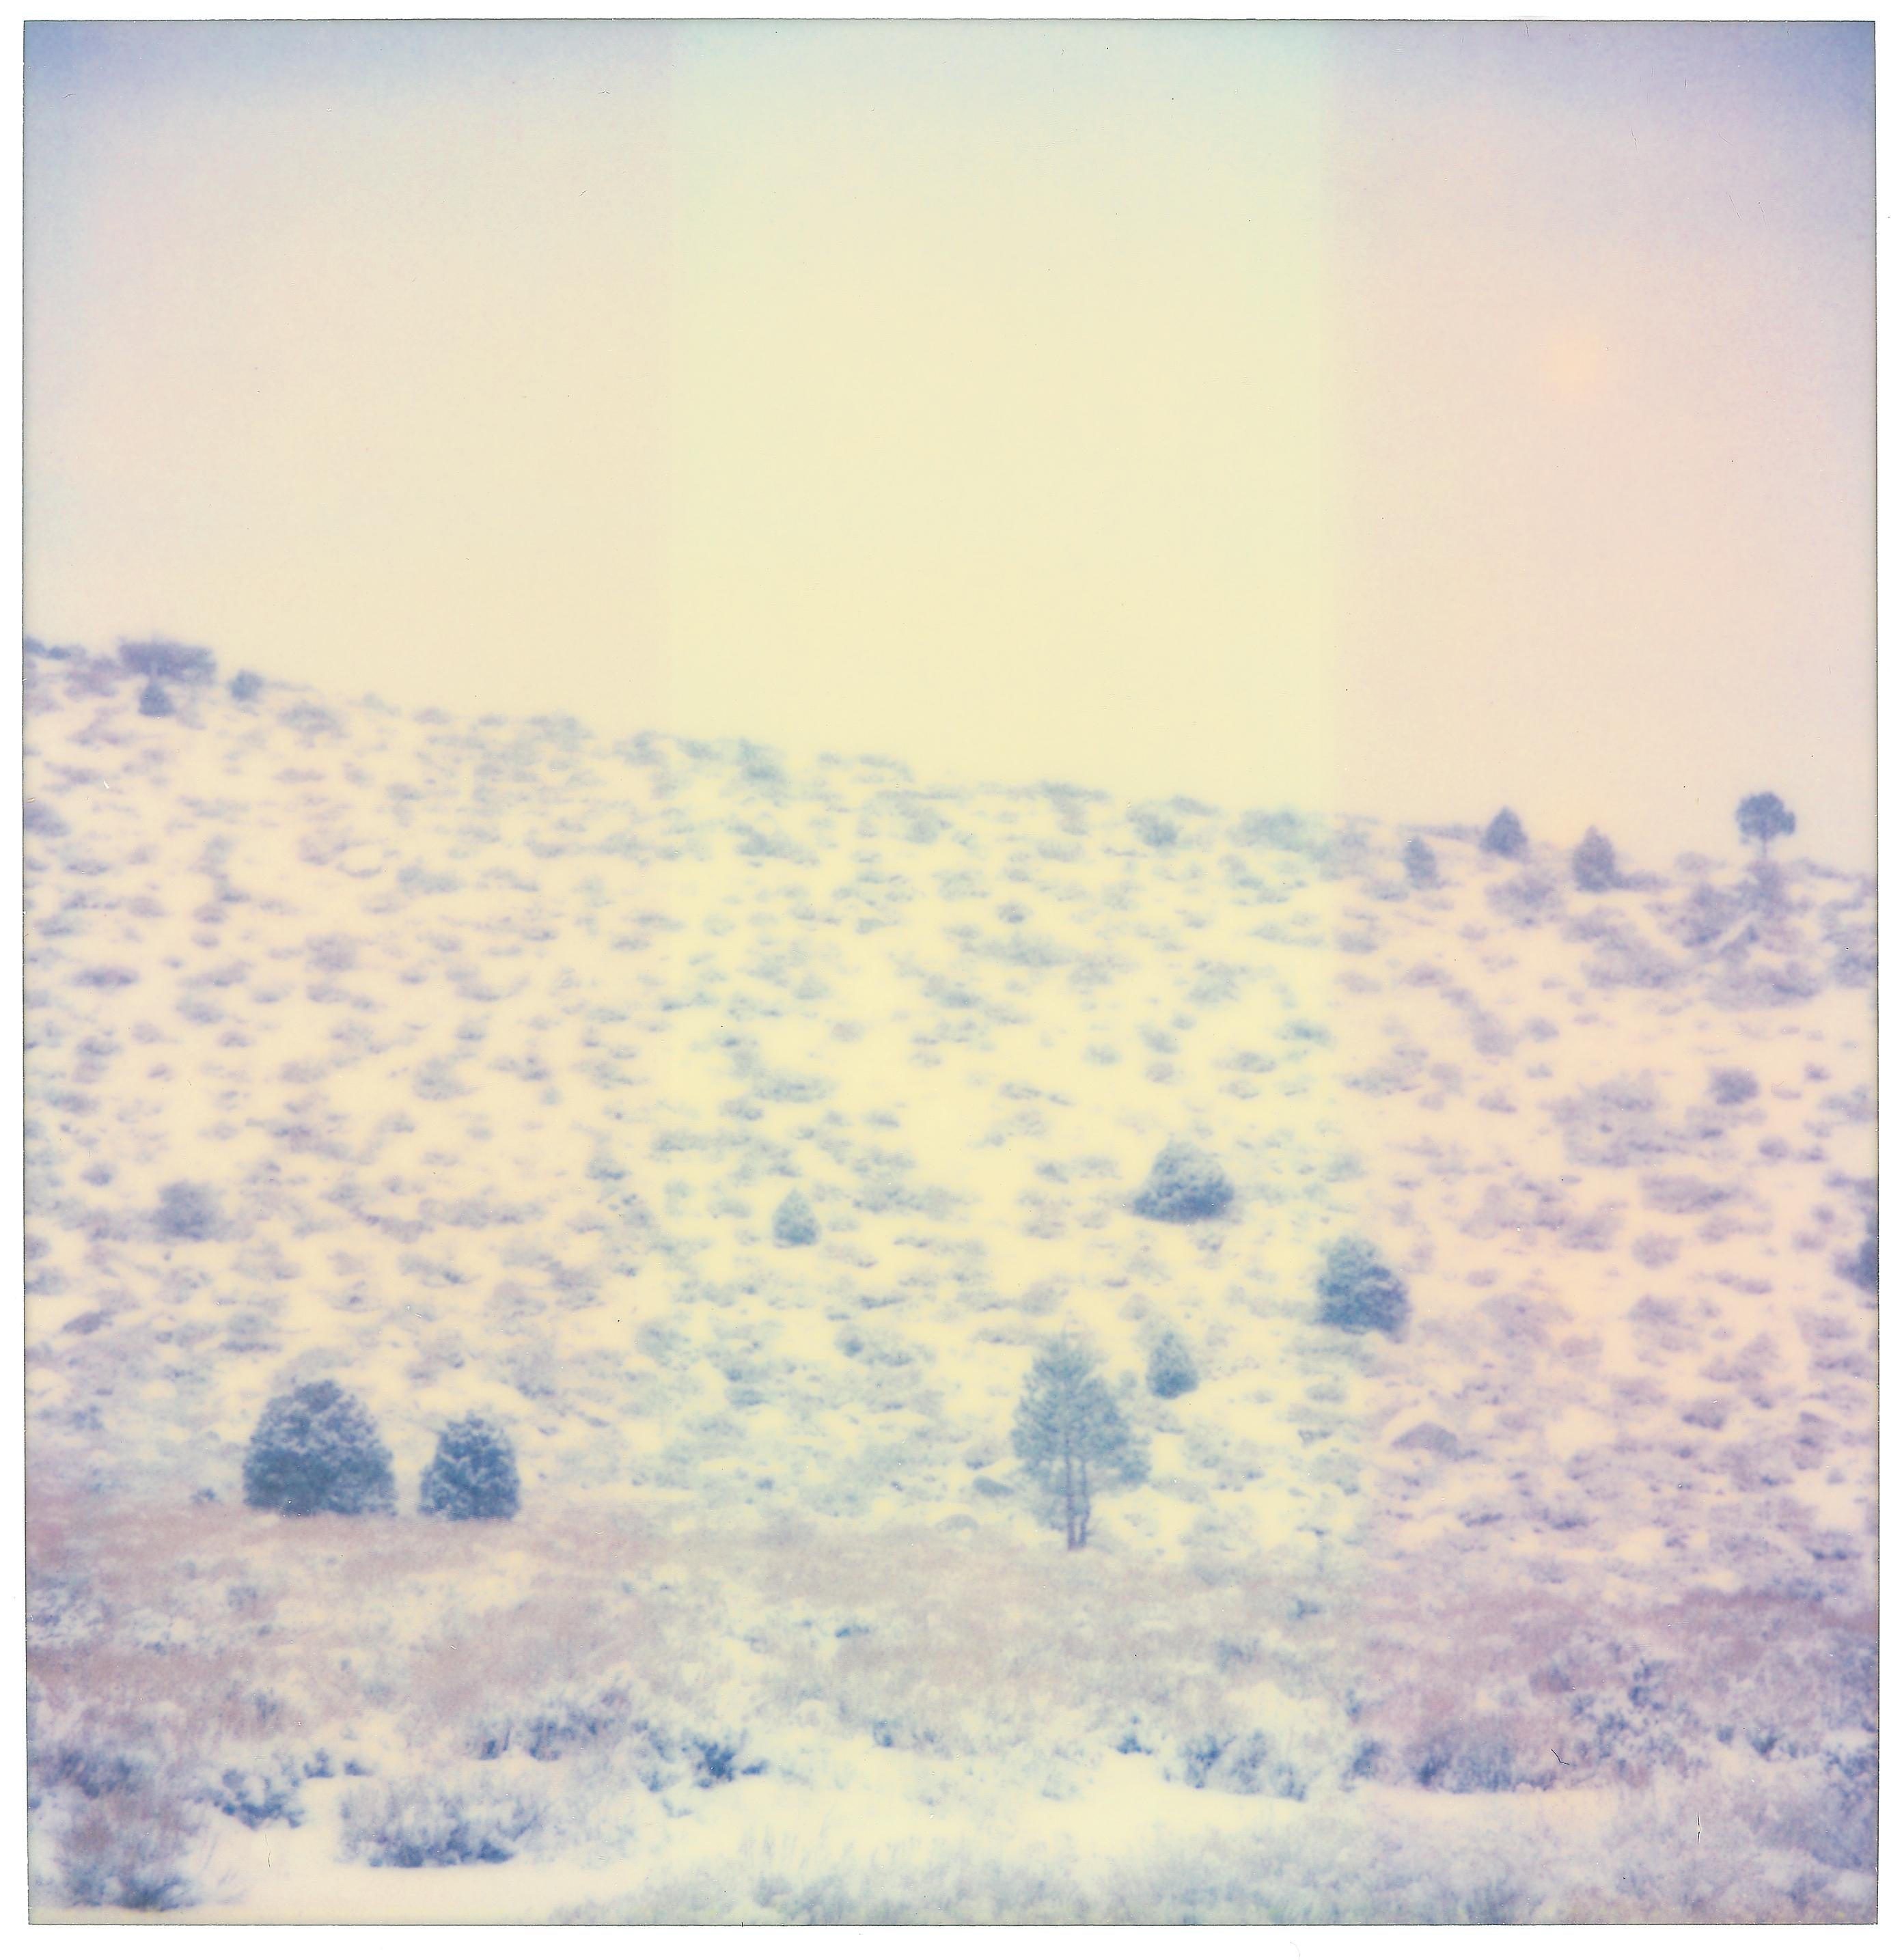 Stefanie Schneider Landscape Photograph - Purple Valley (Wastelands) - Contemporary, Landscape, Polaroid, Analog